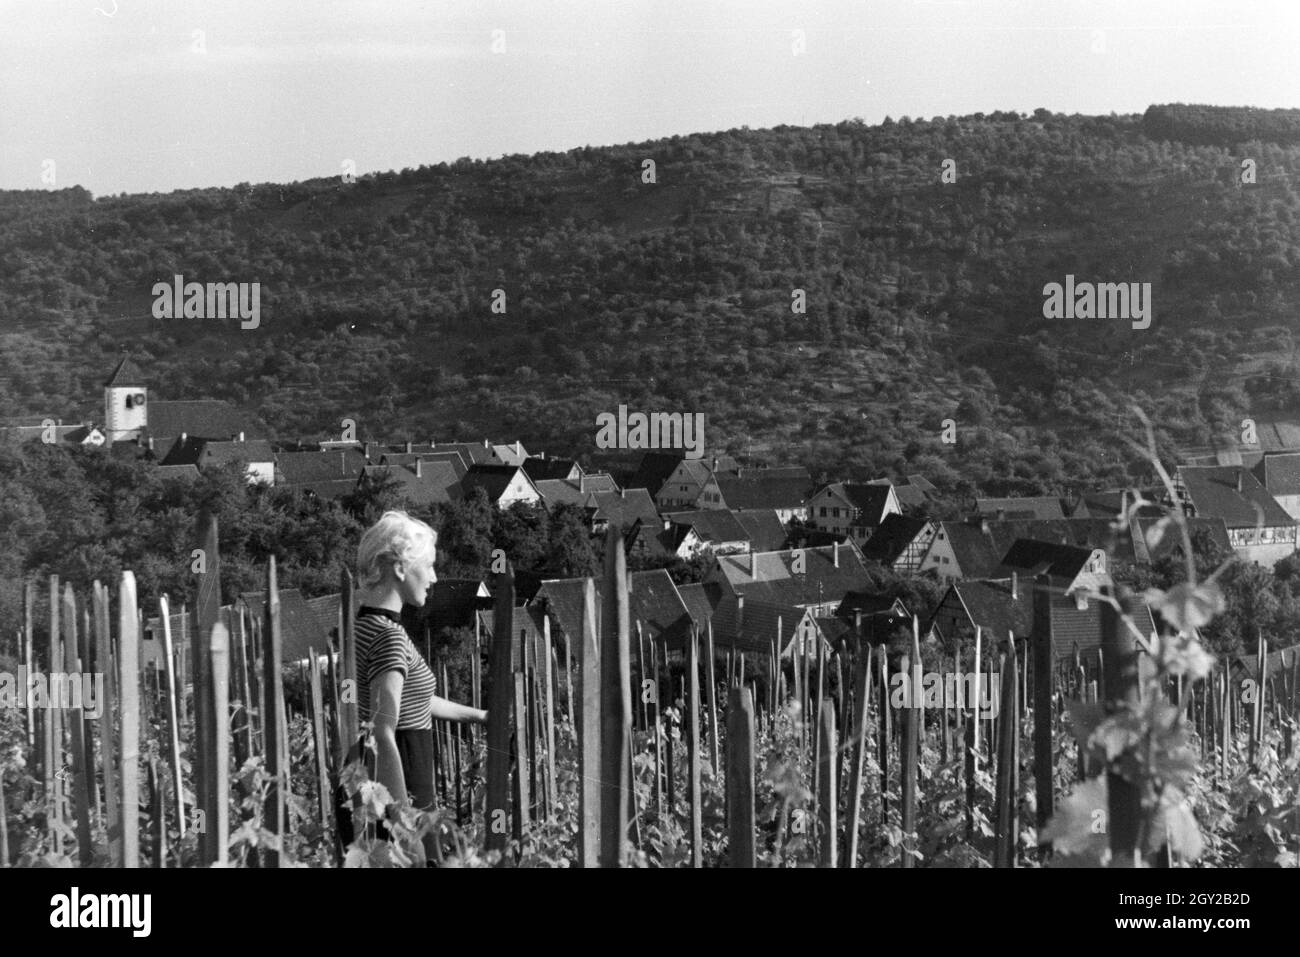 Eine junge Frau inmitten der Weinberge von Schnait (Weinstadt), Deutschland 1930er Jahre. A young woman standing amidst the vineyards of Schnait (Weinstadt), Germany 1930s. Stock Photo